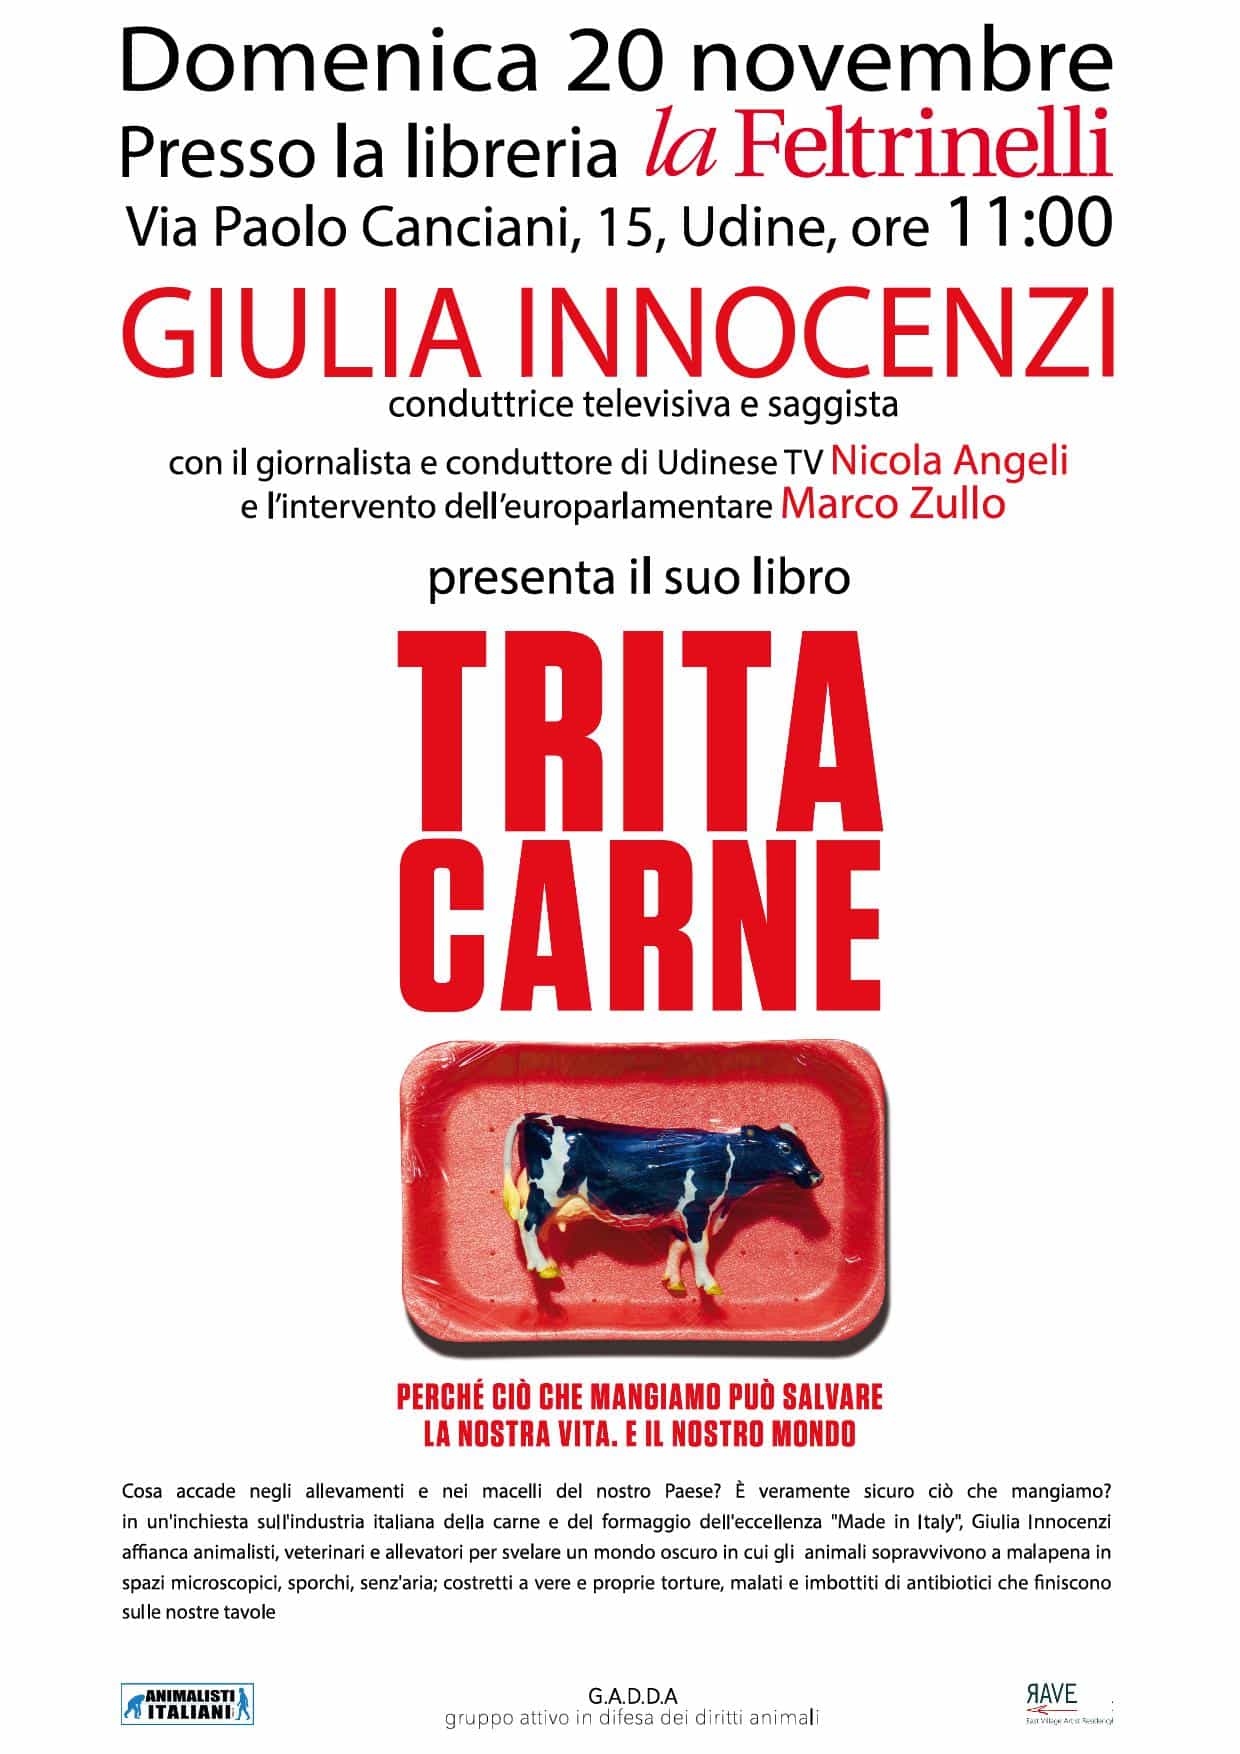 PRESENTAZIONE DEL LIBRO "TRITA CARNE" - UDINE @ Libreria "la Feltrinelli" | Udine | Friuli-Venezia Giulia | Italia